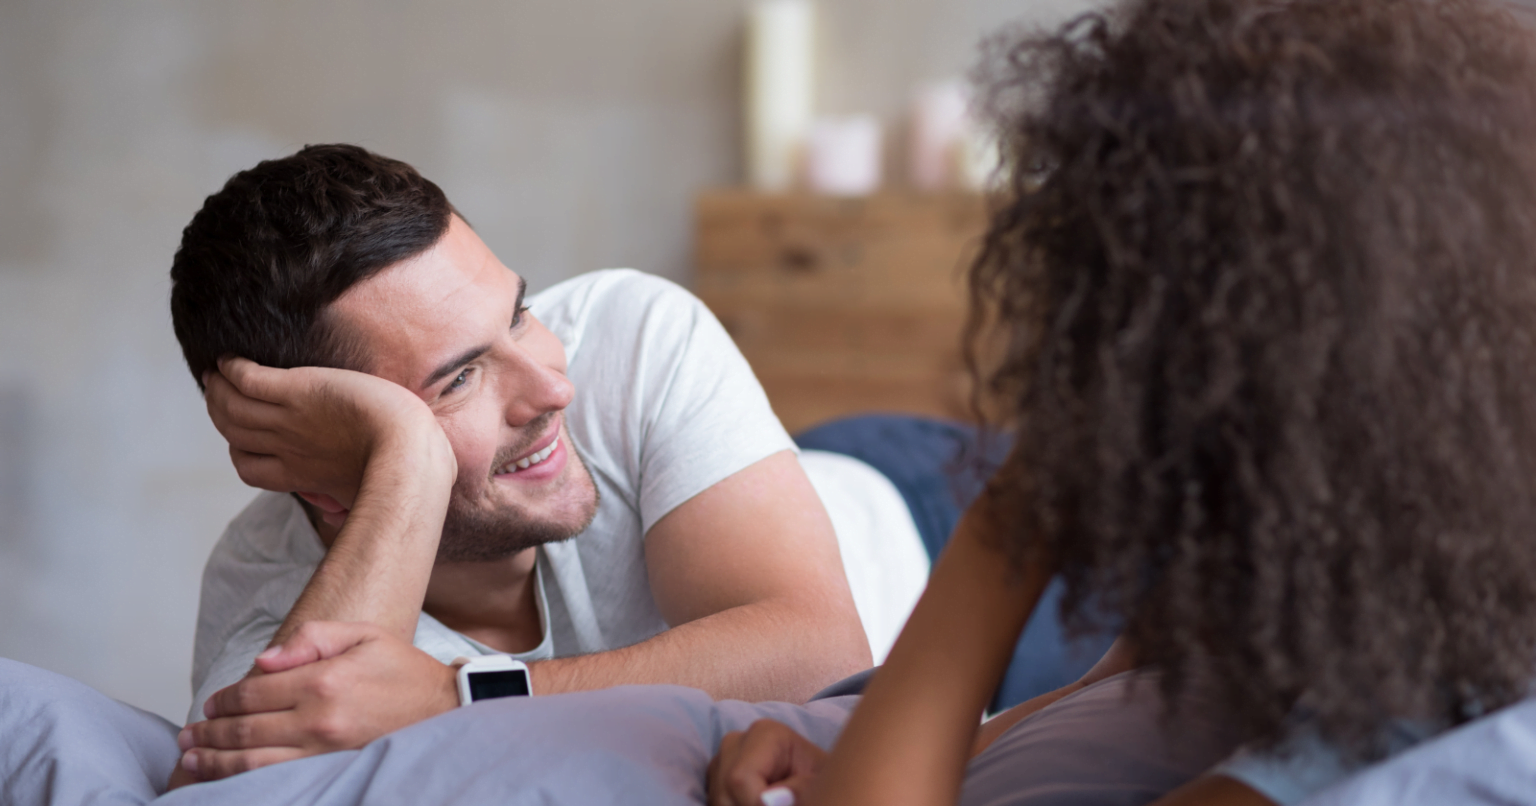 Se um homem apresenta esses 5 comportamentos, provavelmente ele está profundamente apaixonado por você